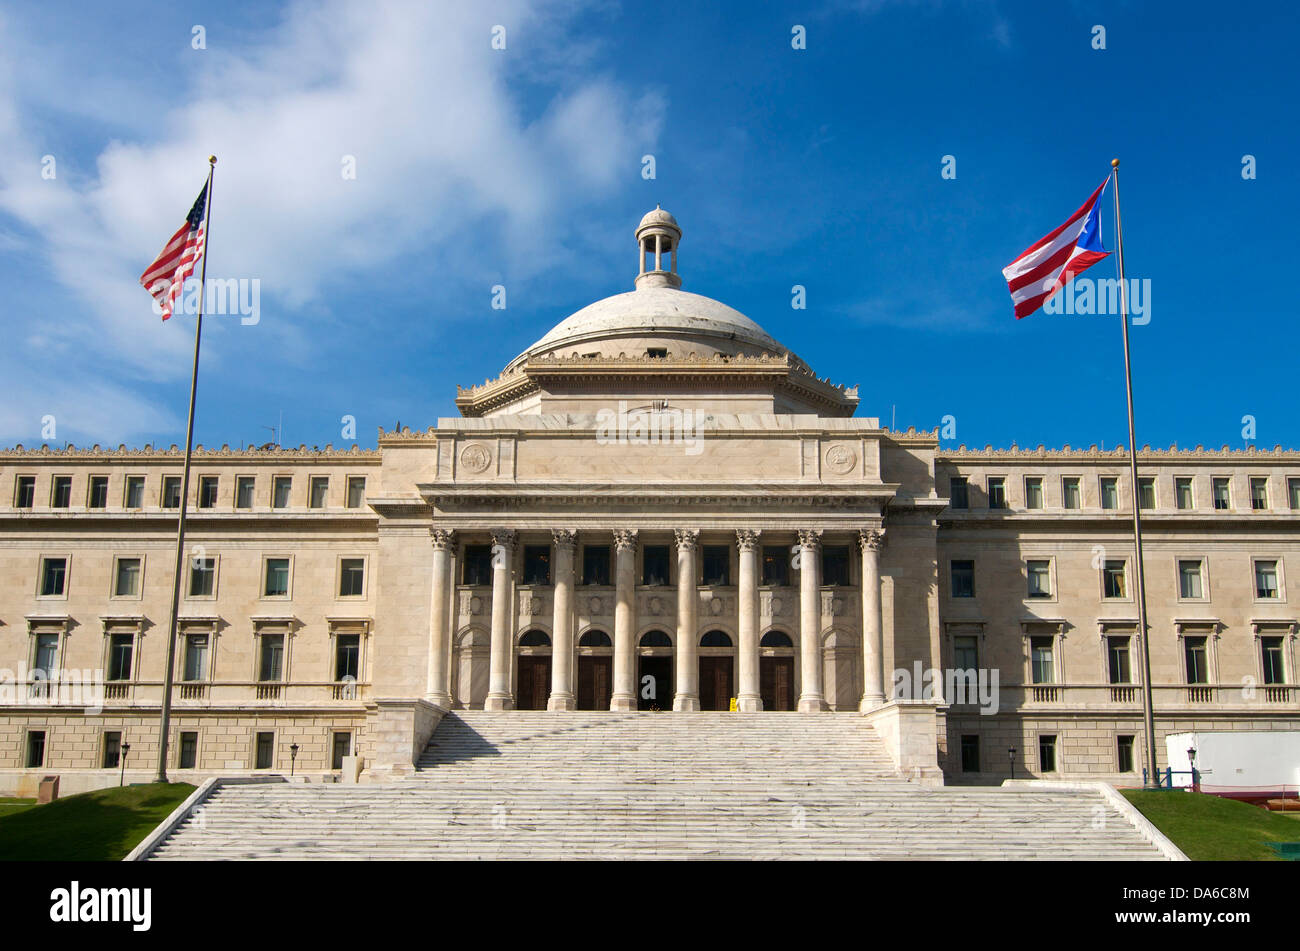 Puerto Rico, Caraibi, Antille Maggiori, Antille, Capitol, il governo, la costruzione, la costruzione, l'architettura, il Parlamento, statu Foto Stock